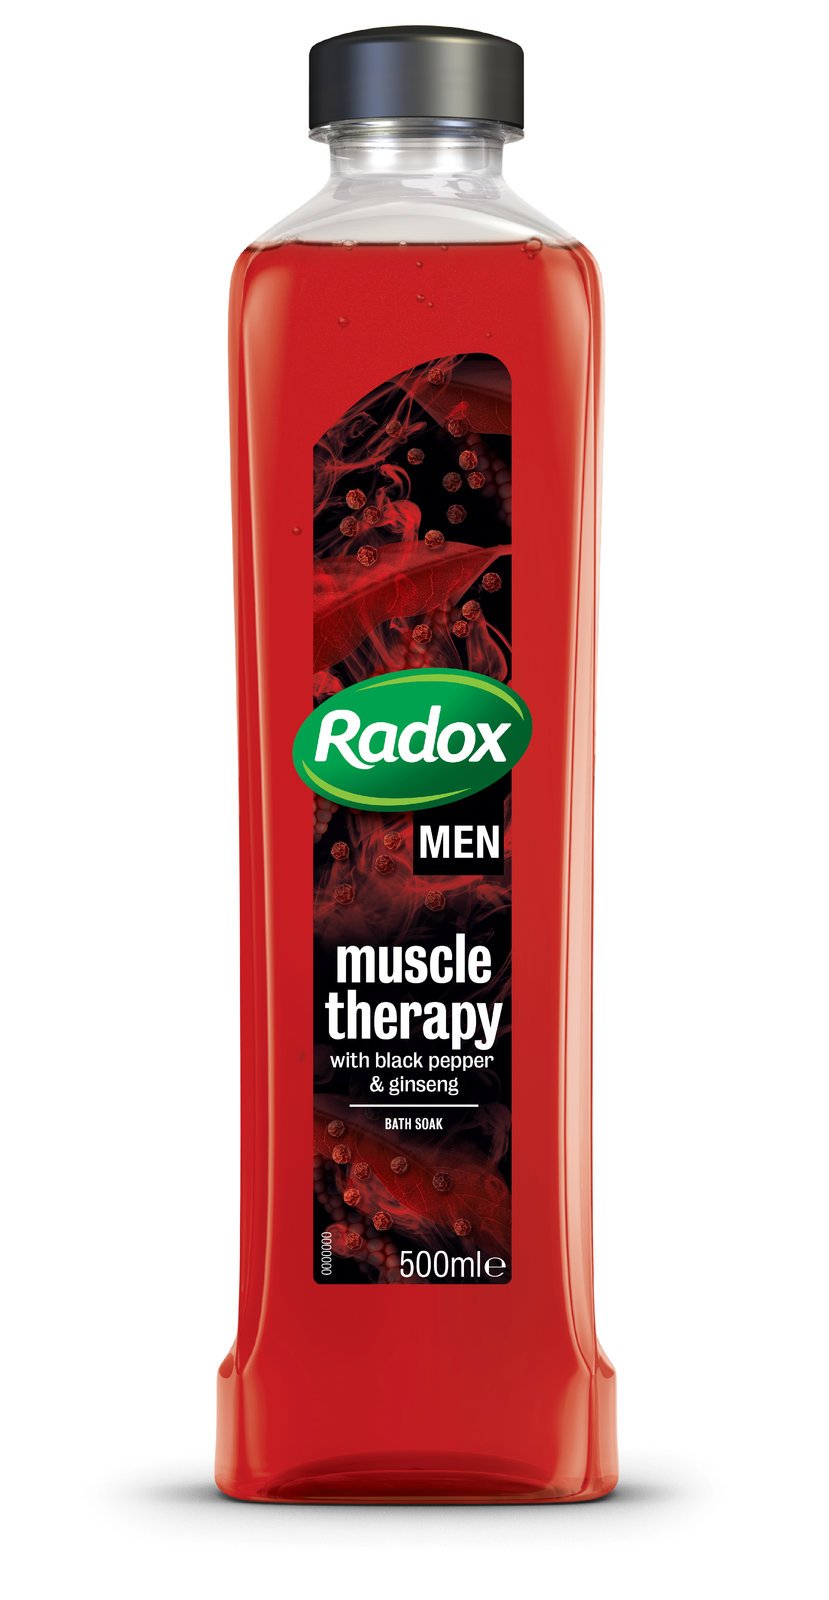 Pánská koupelová pěna Muscle Therapy, Radox, 107,90 Kč.